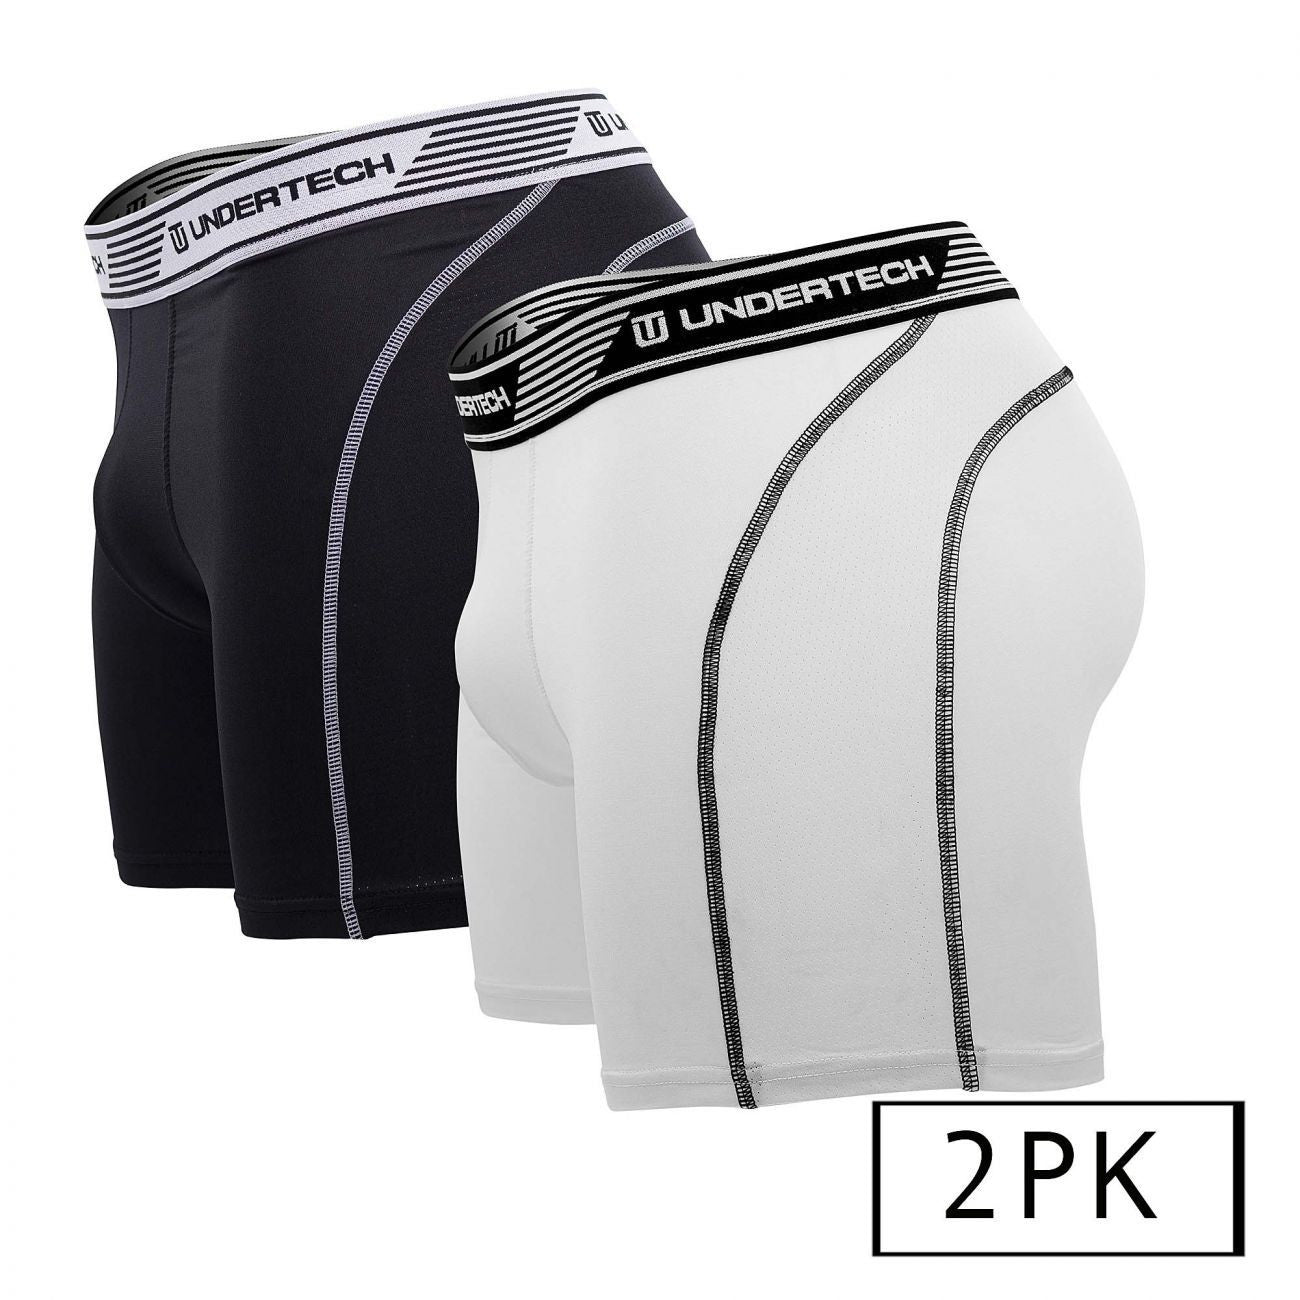 Undertech 347710 2PK Mesh Boxer Briefs Color Black-White